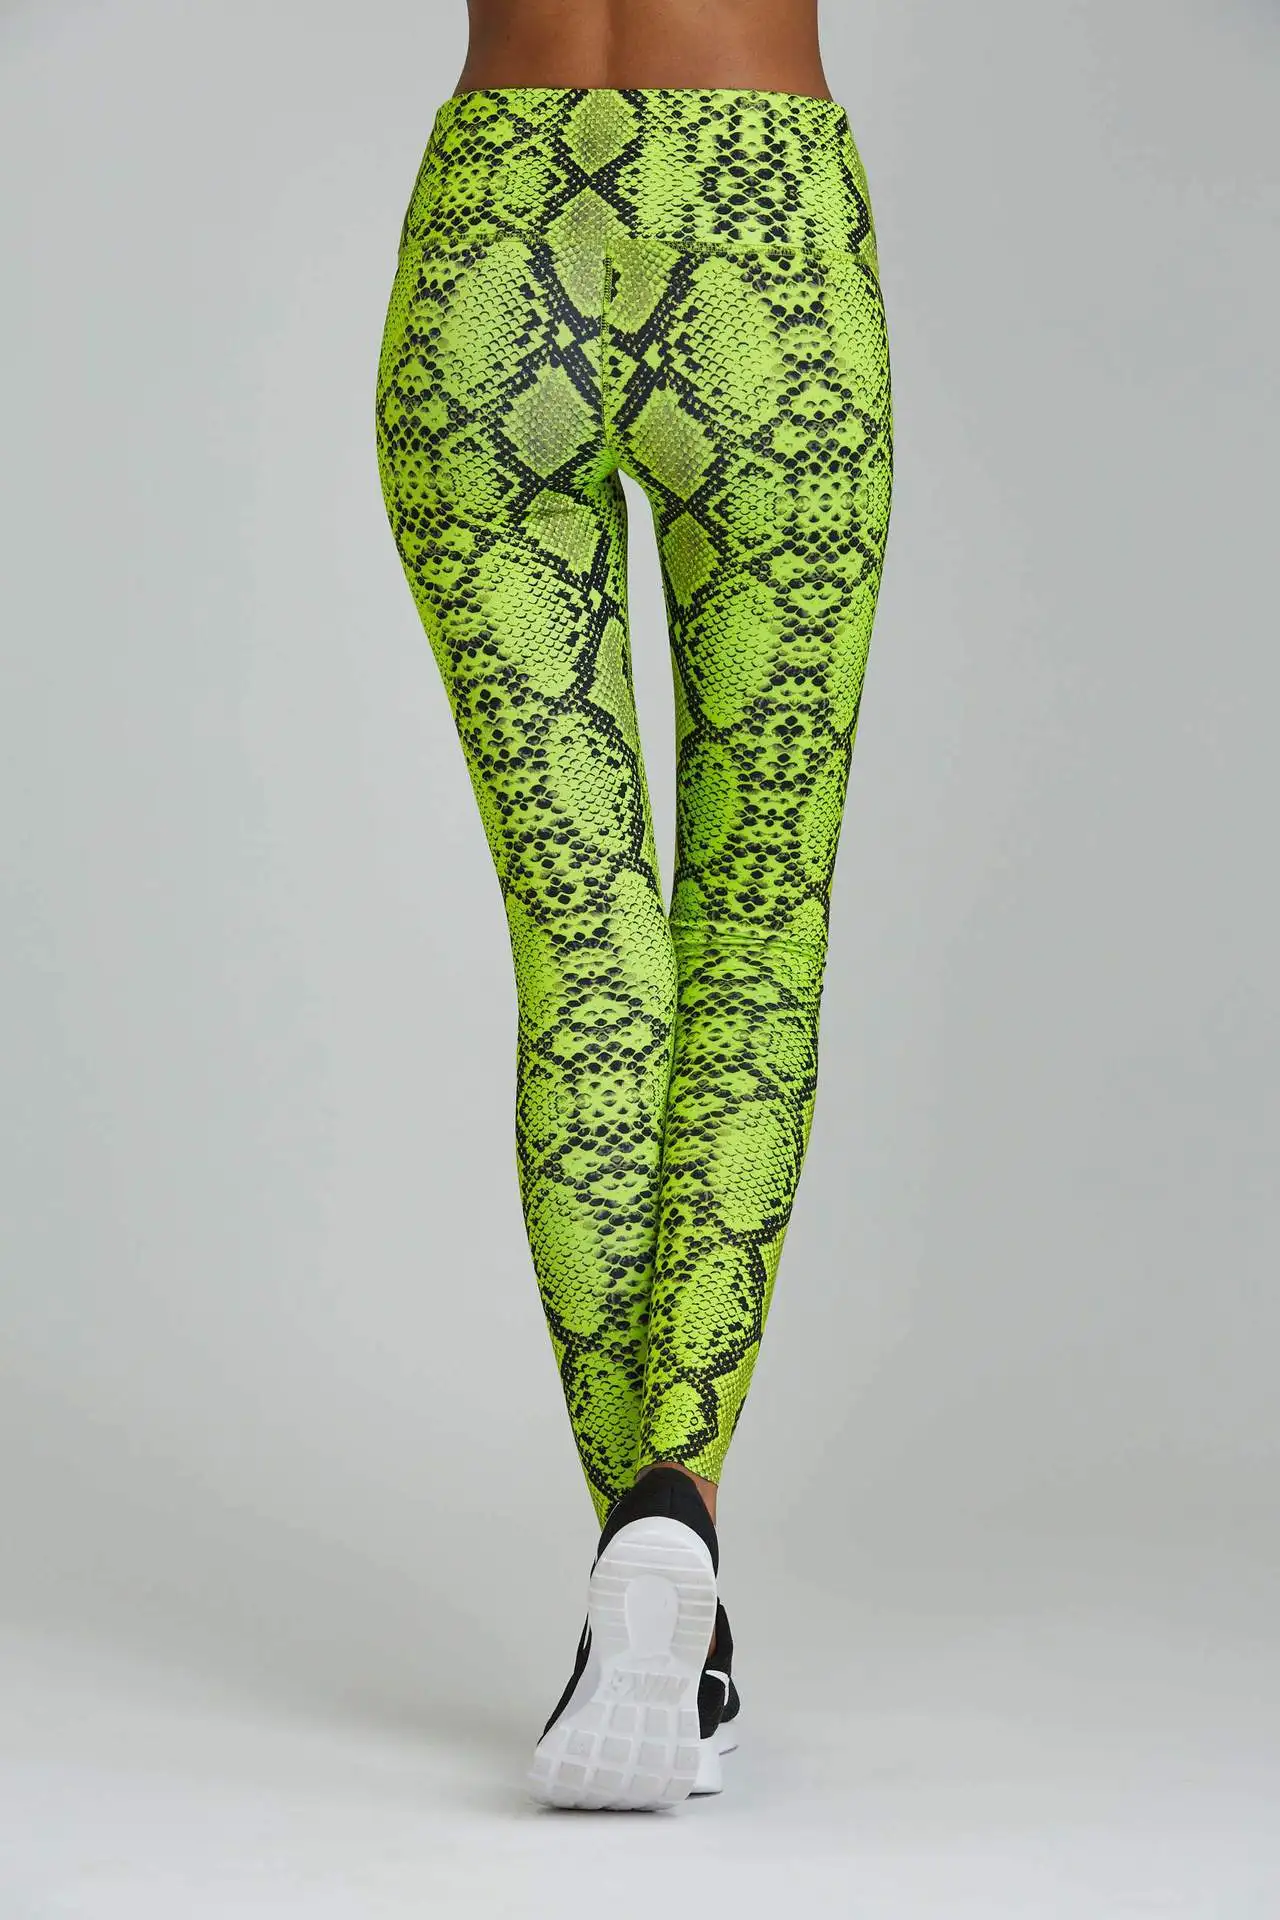 Женские леггинсы для фитнеса, зеленые Леггинсы со змеиным принтом, эластичные сексуальные штаны с эффектом пуш-ап